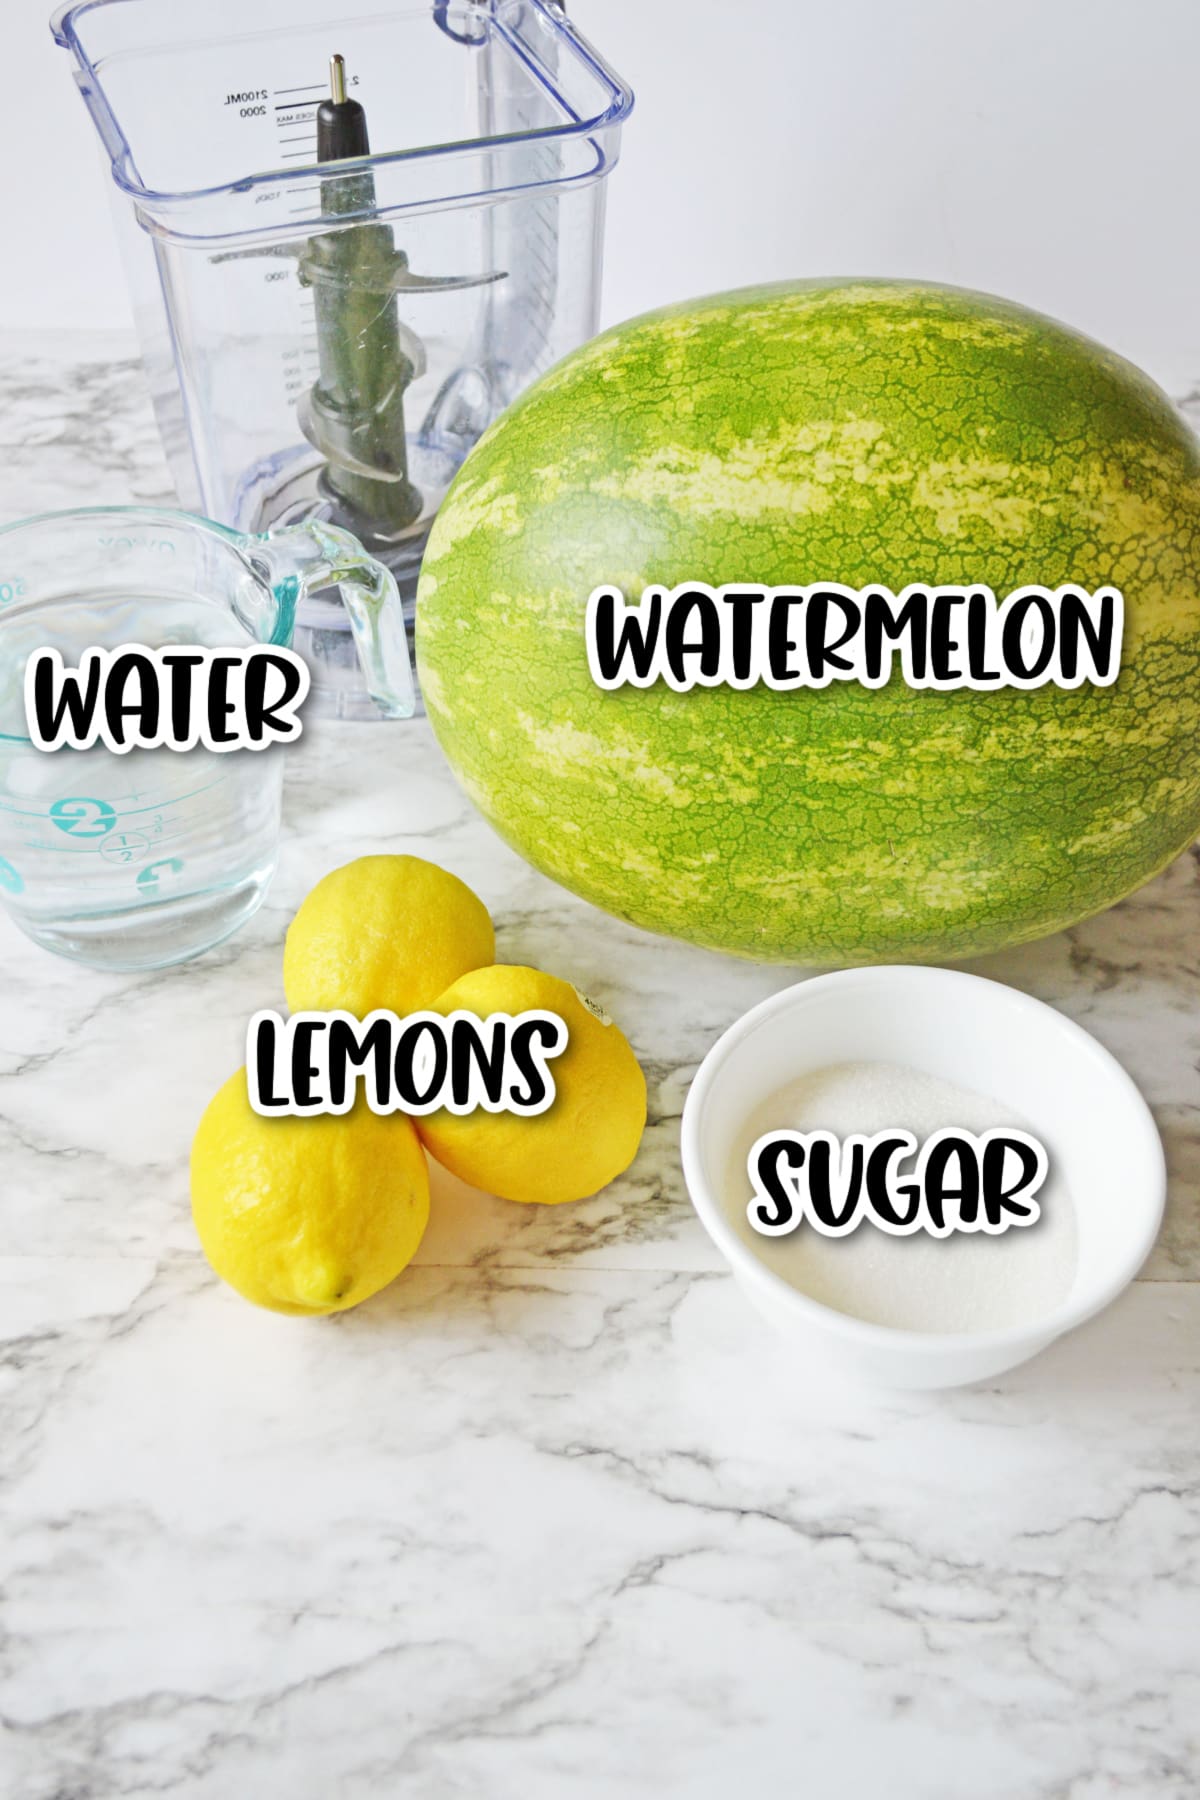 Ingredients for watermelon lemonade